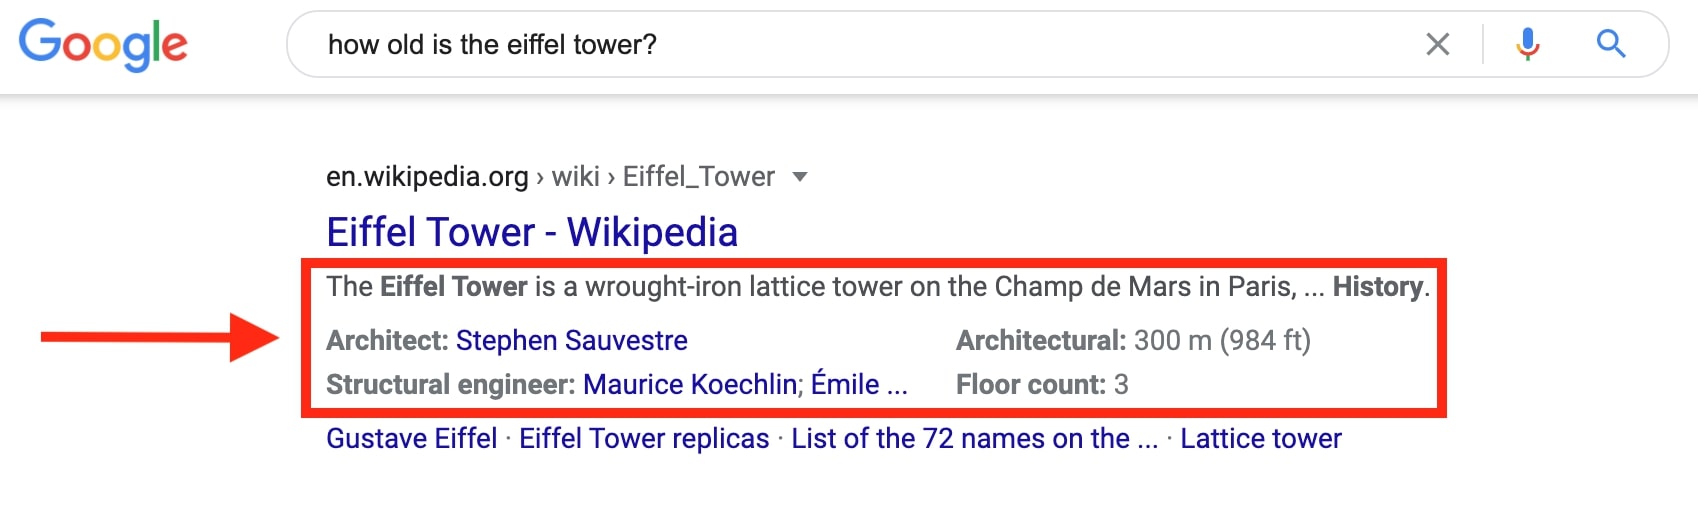 エッフェル塔のGoogleスニペット